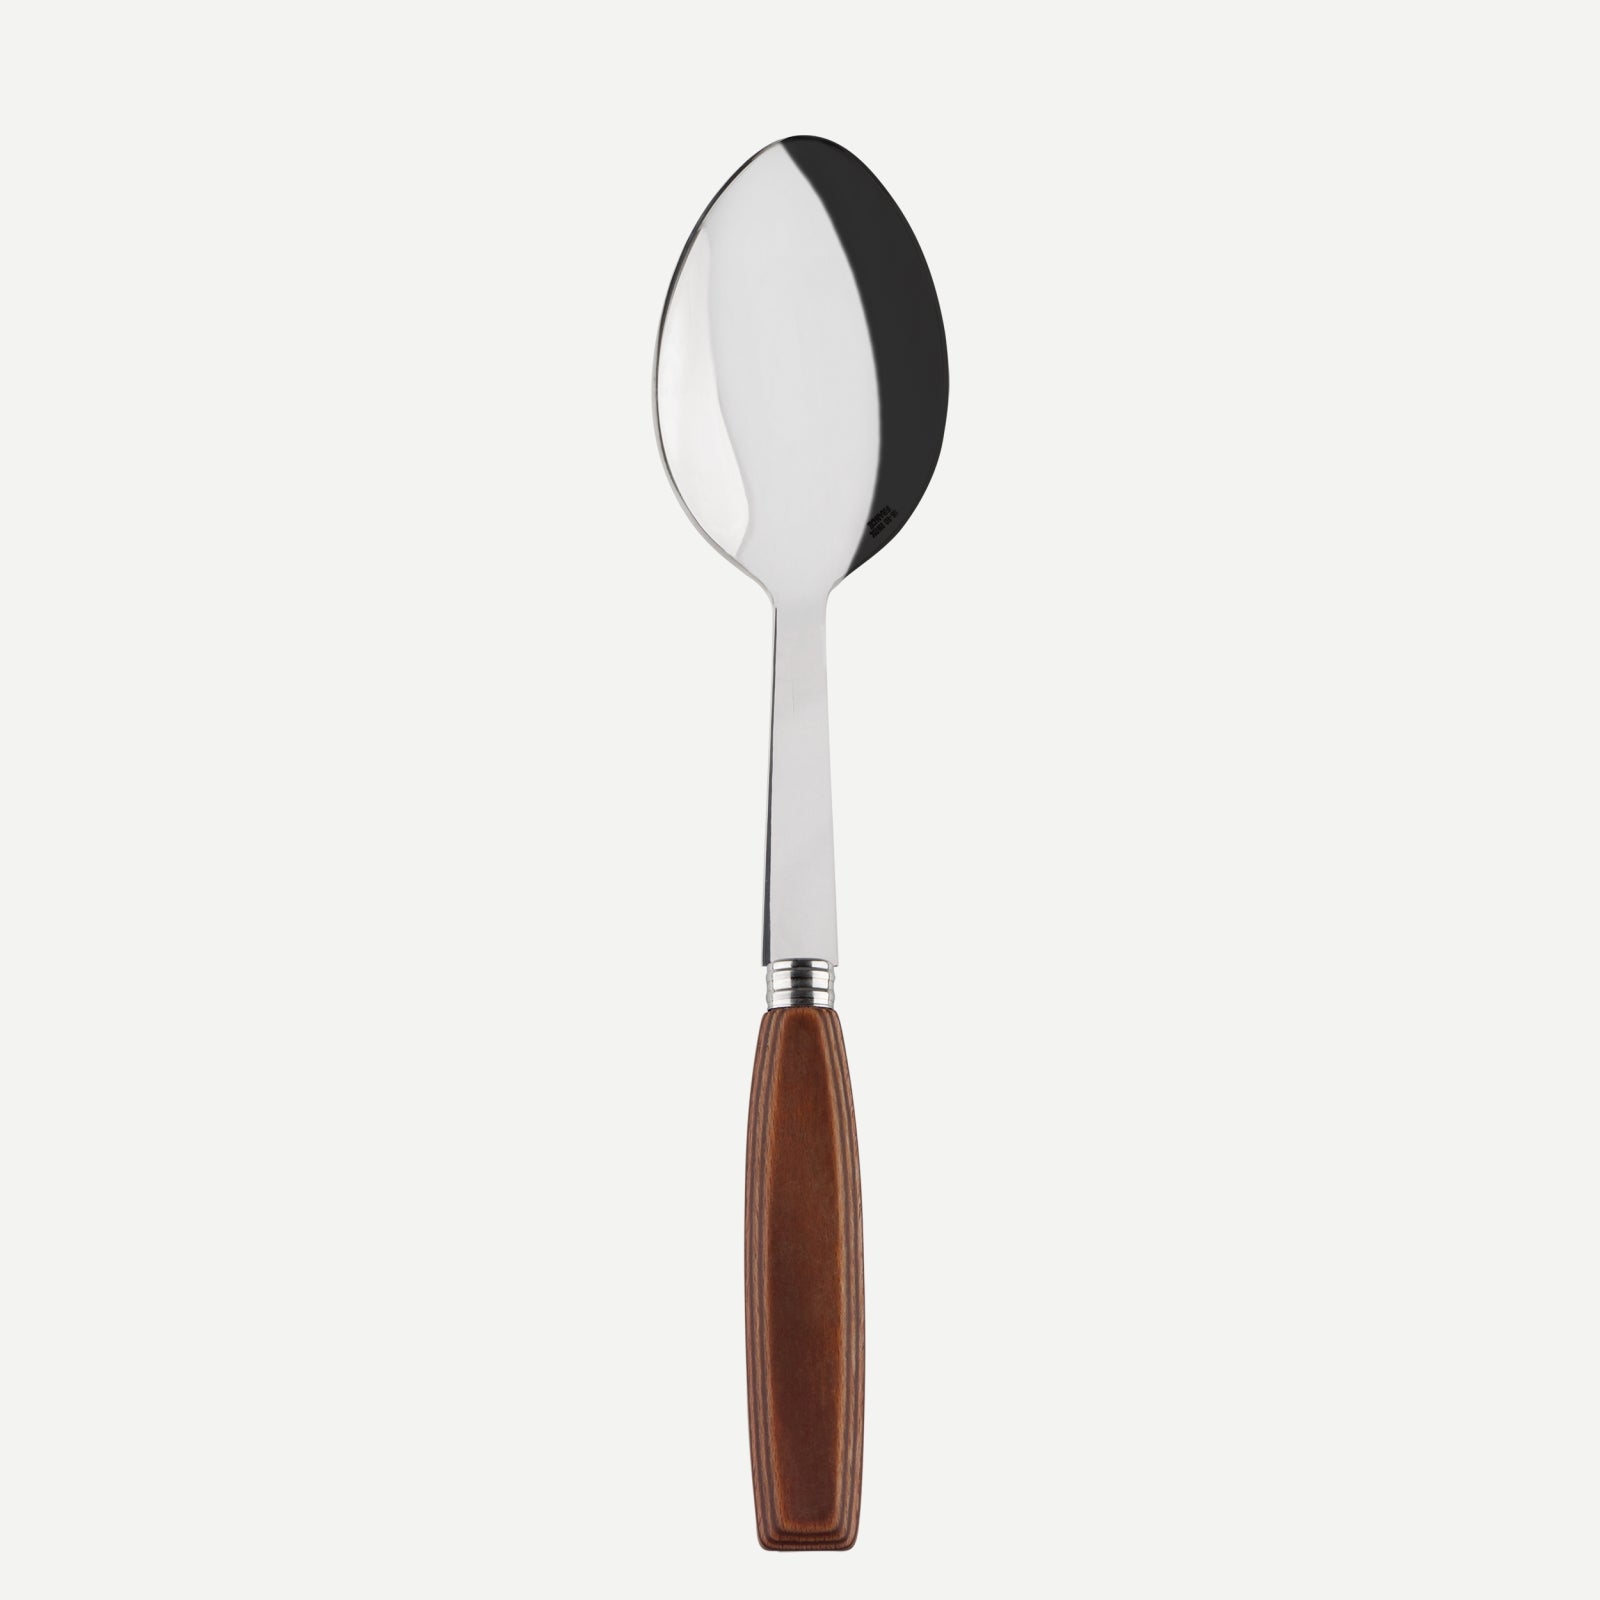 Serving spoon - Djembe - Light press wood